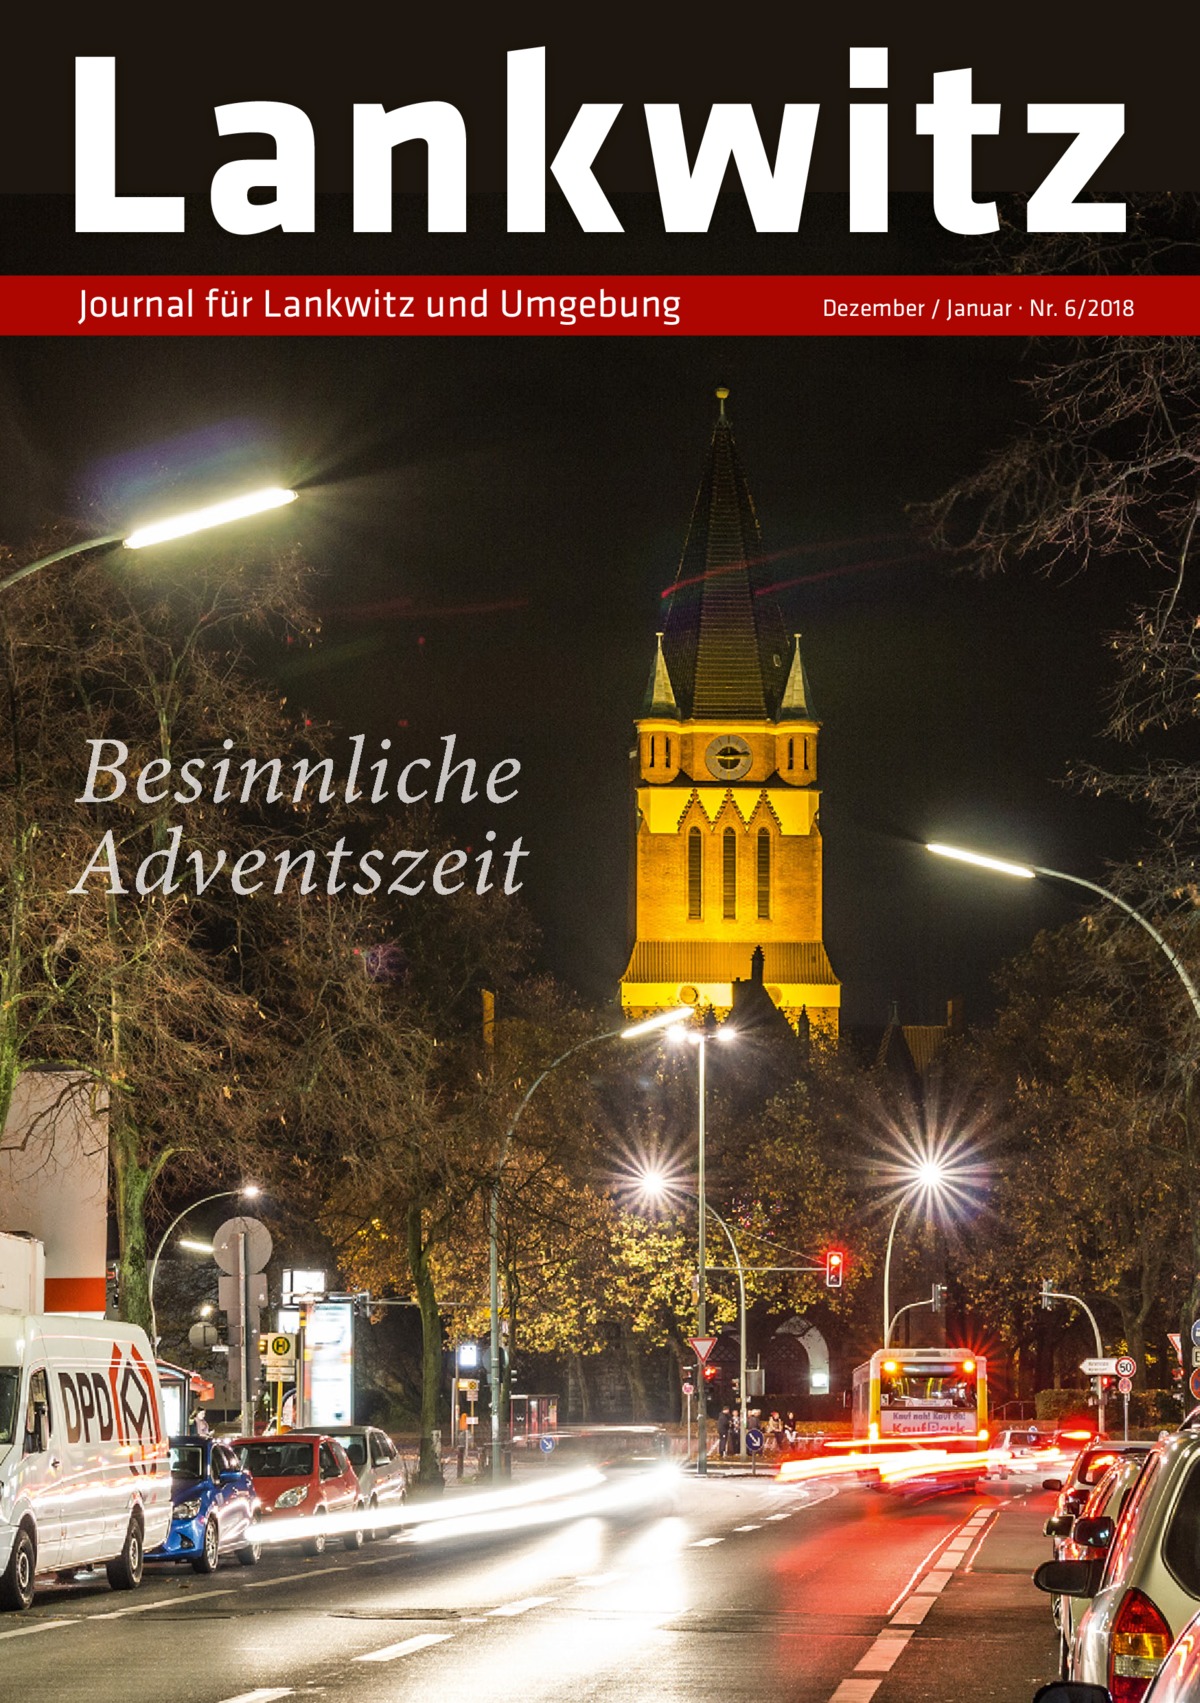 Lankwitz Journal für Lankwitz und Umgebung  Besinnliche Adventszeit  Dezember / Januar · Nr. 6/2018